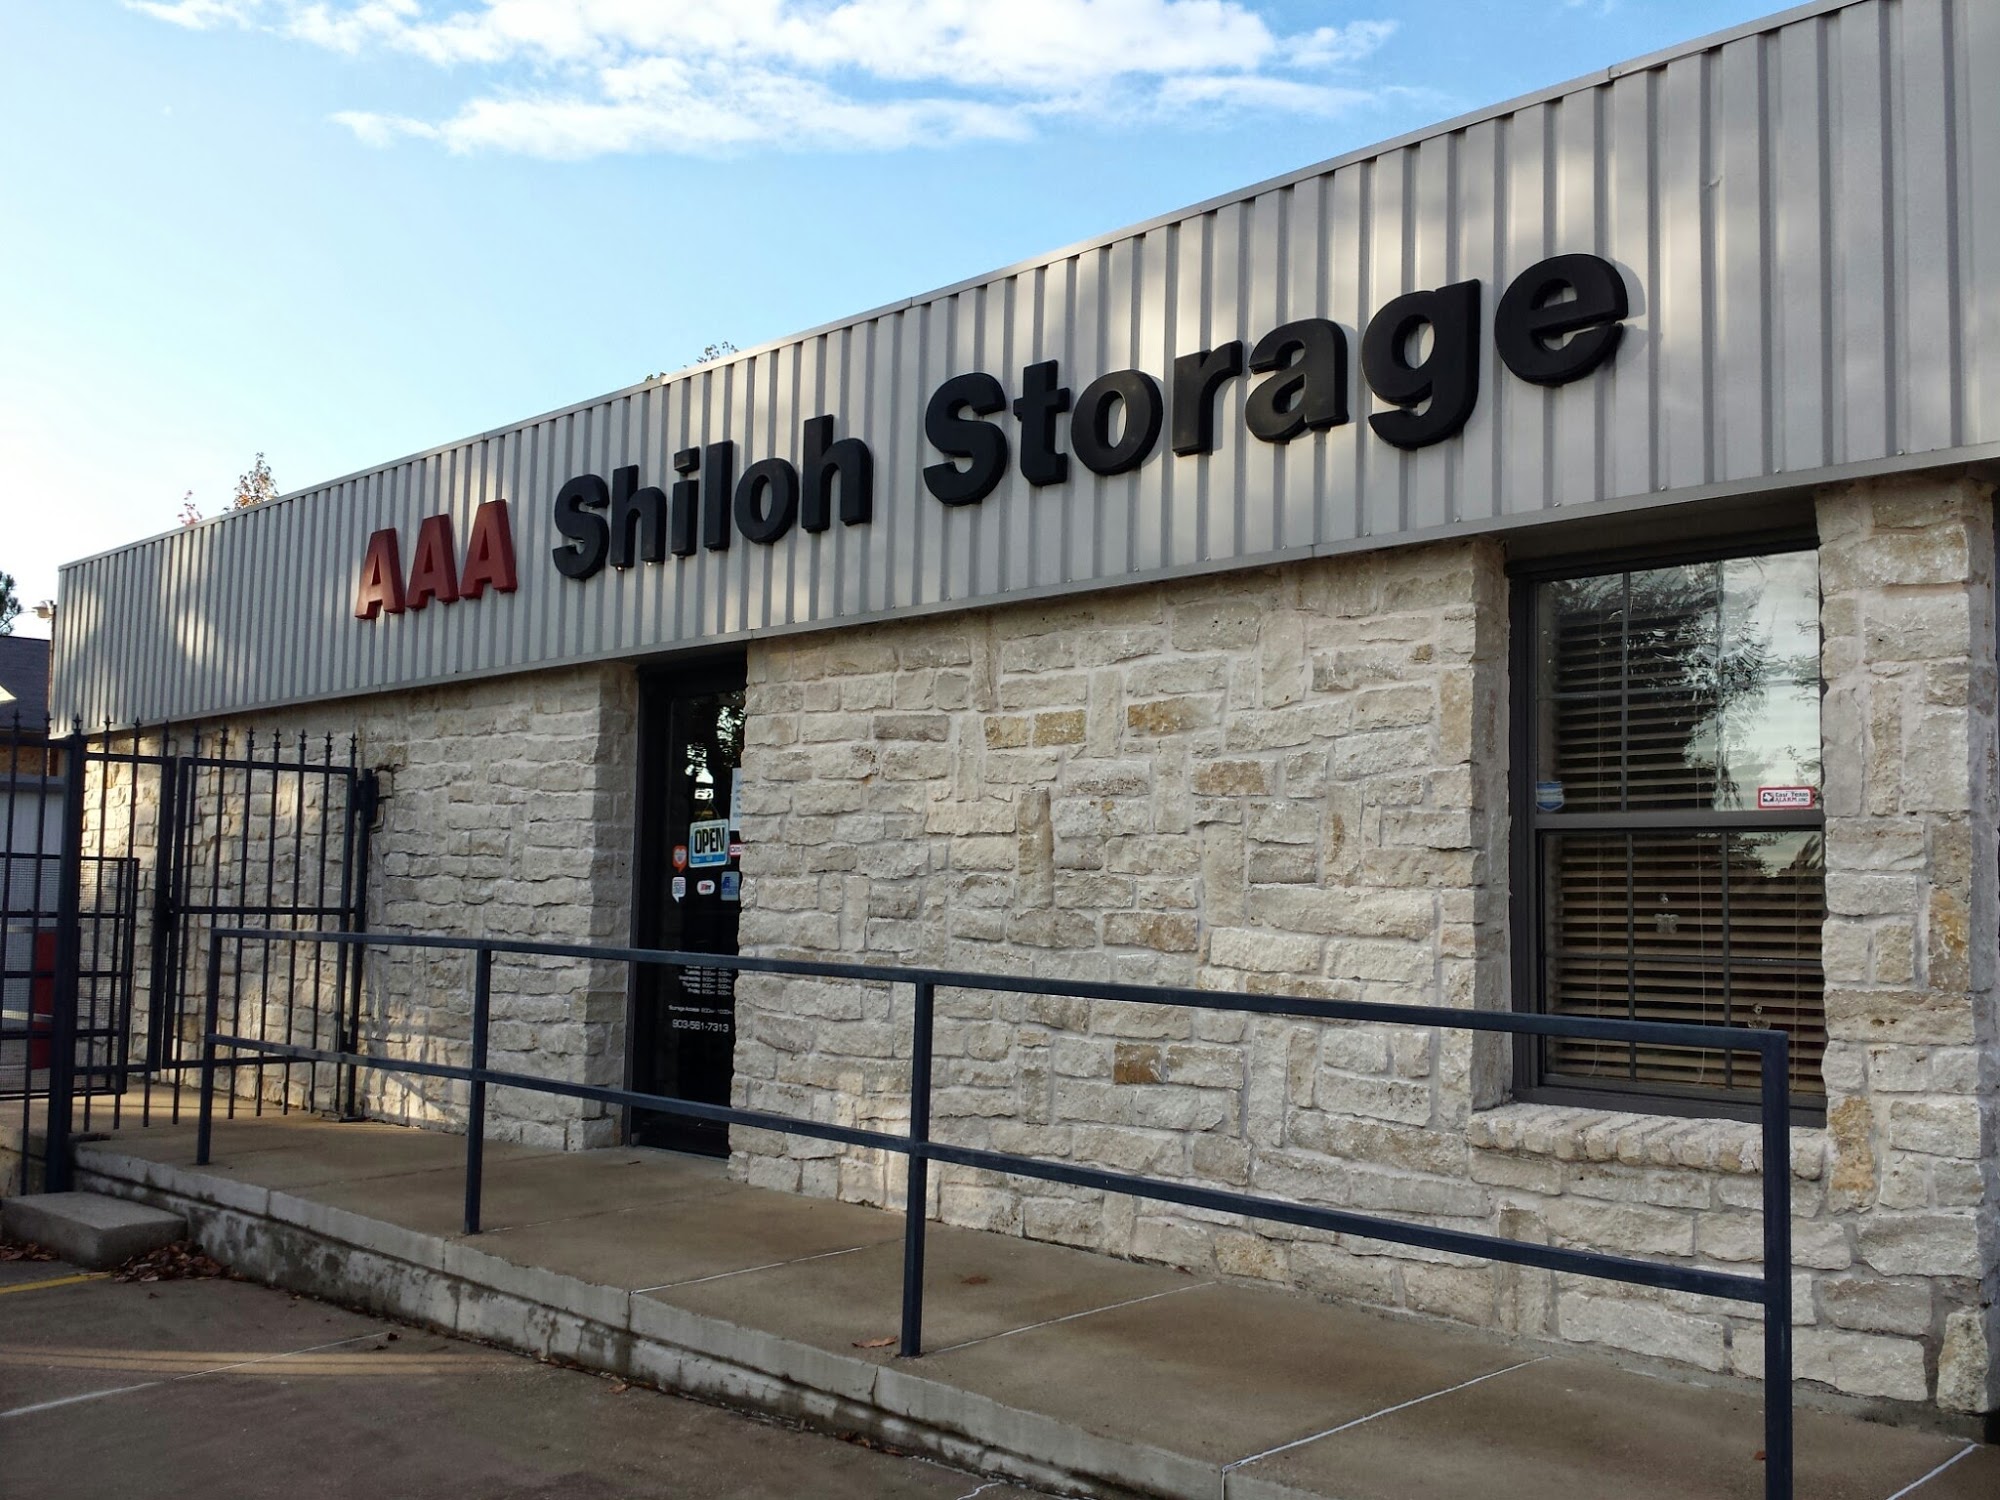 AAA Shiloh Storage